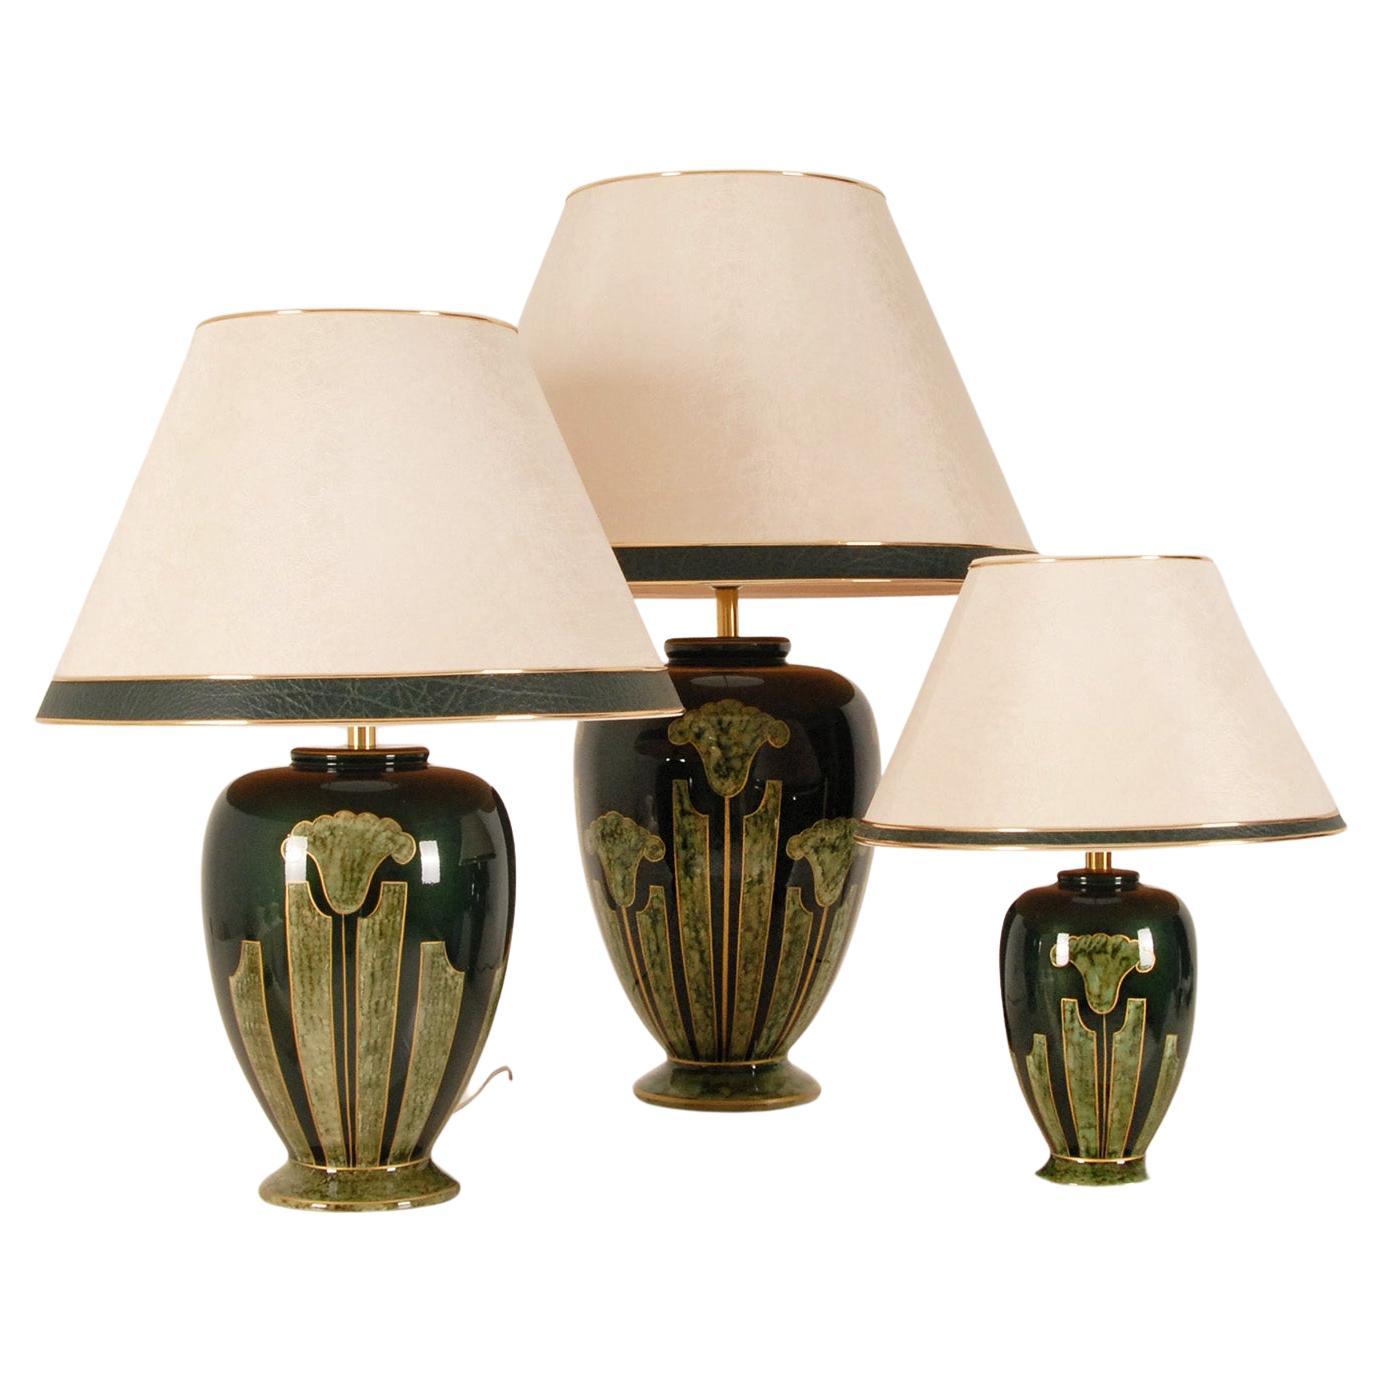 Französische Vintage-Tischlampen aus Keramik in Grün und Gold mit Marmor und Metallic, 3er-Set